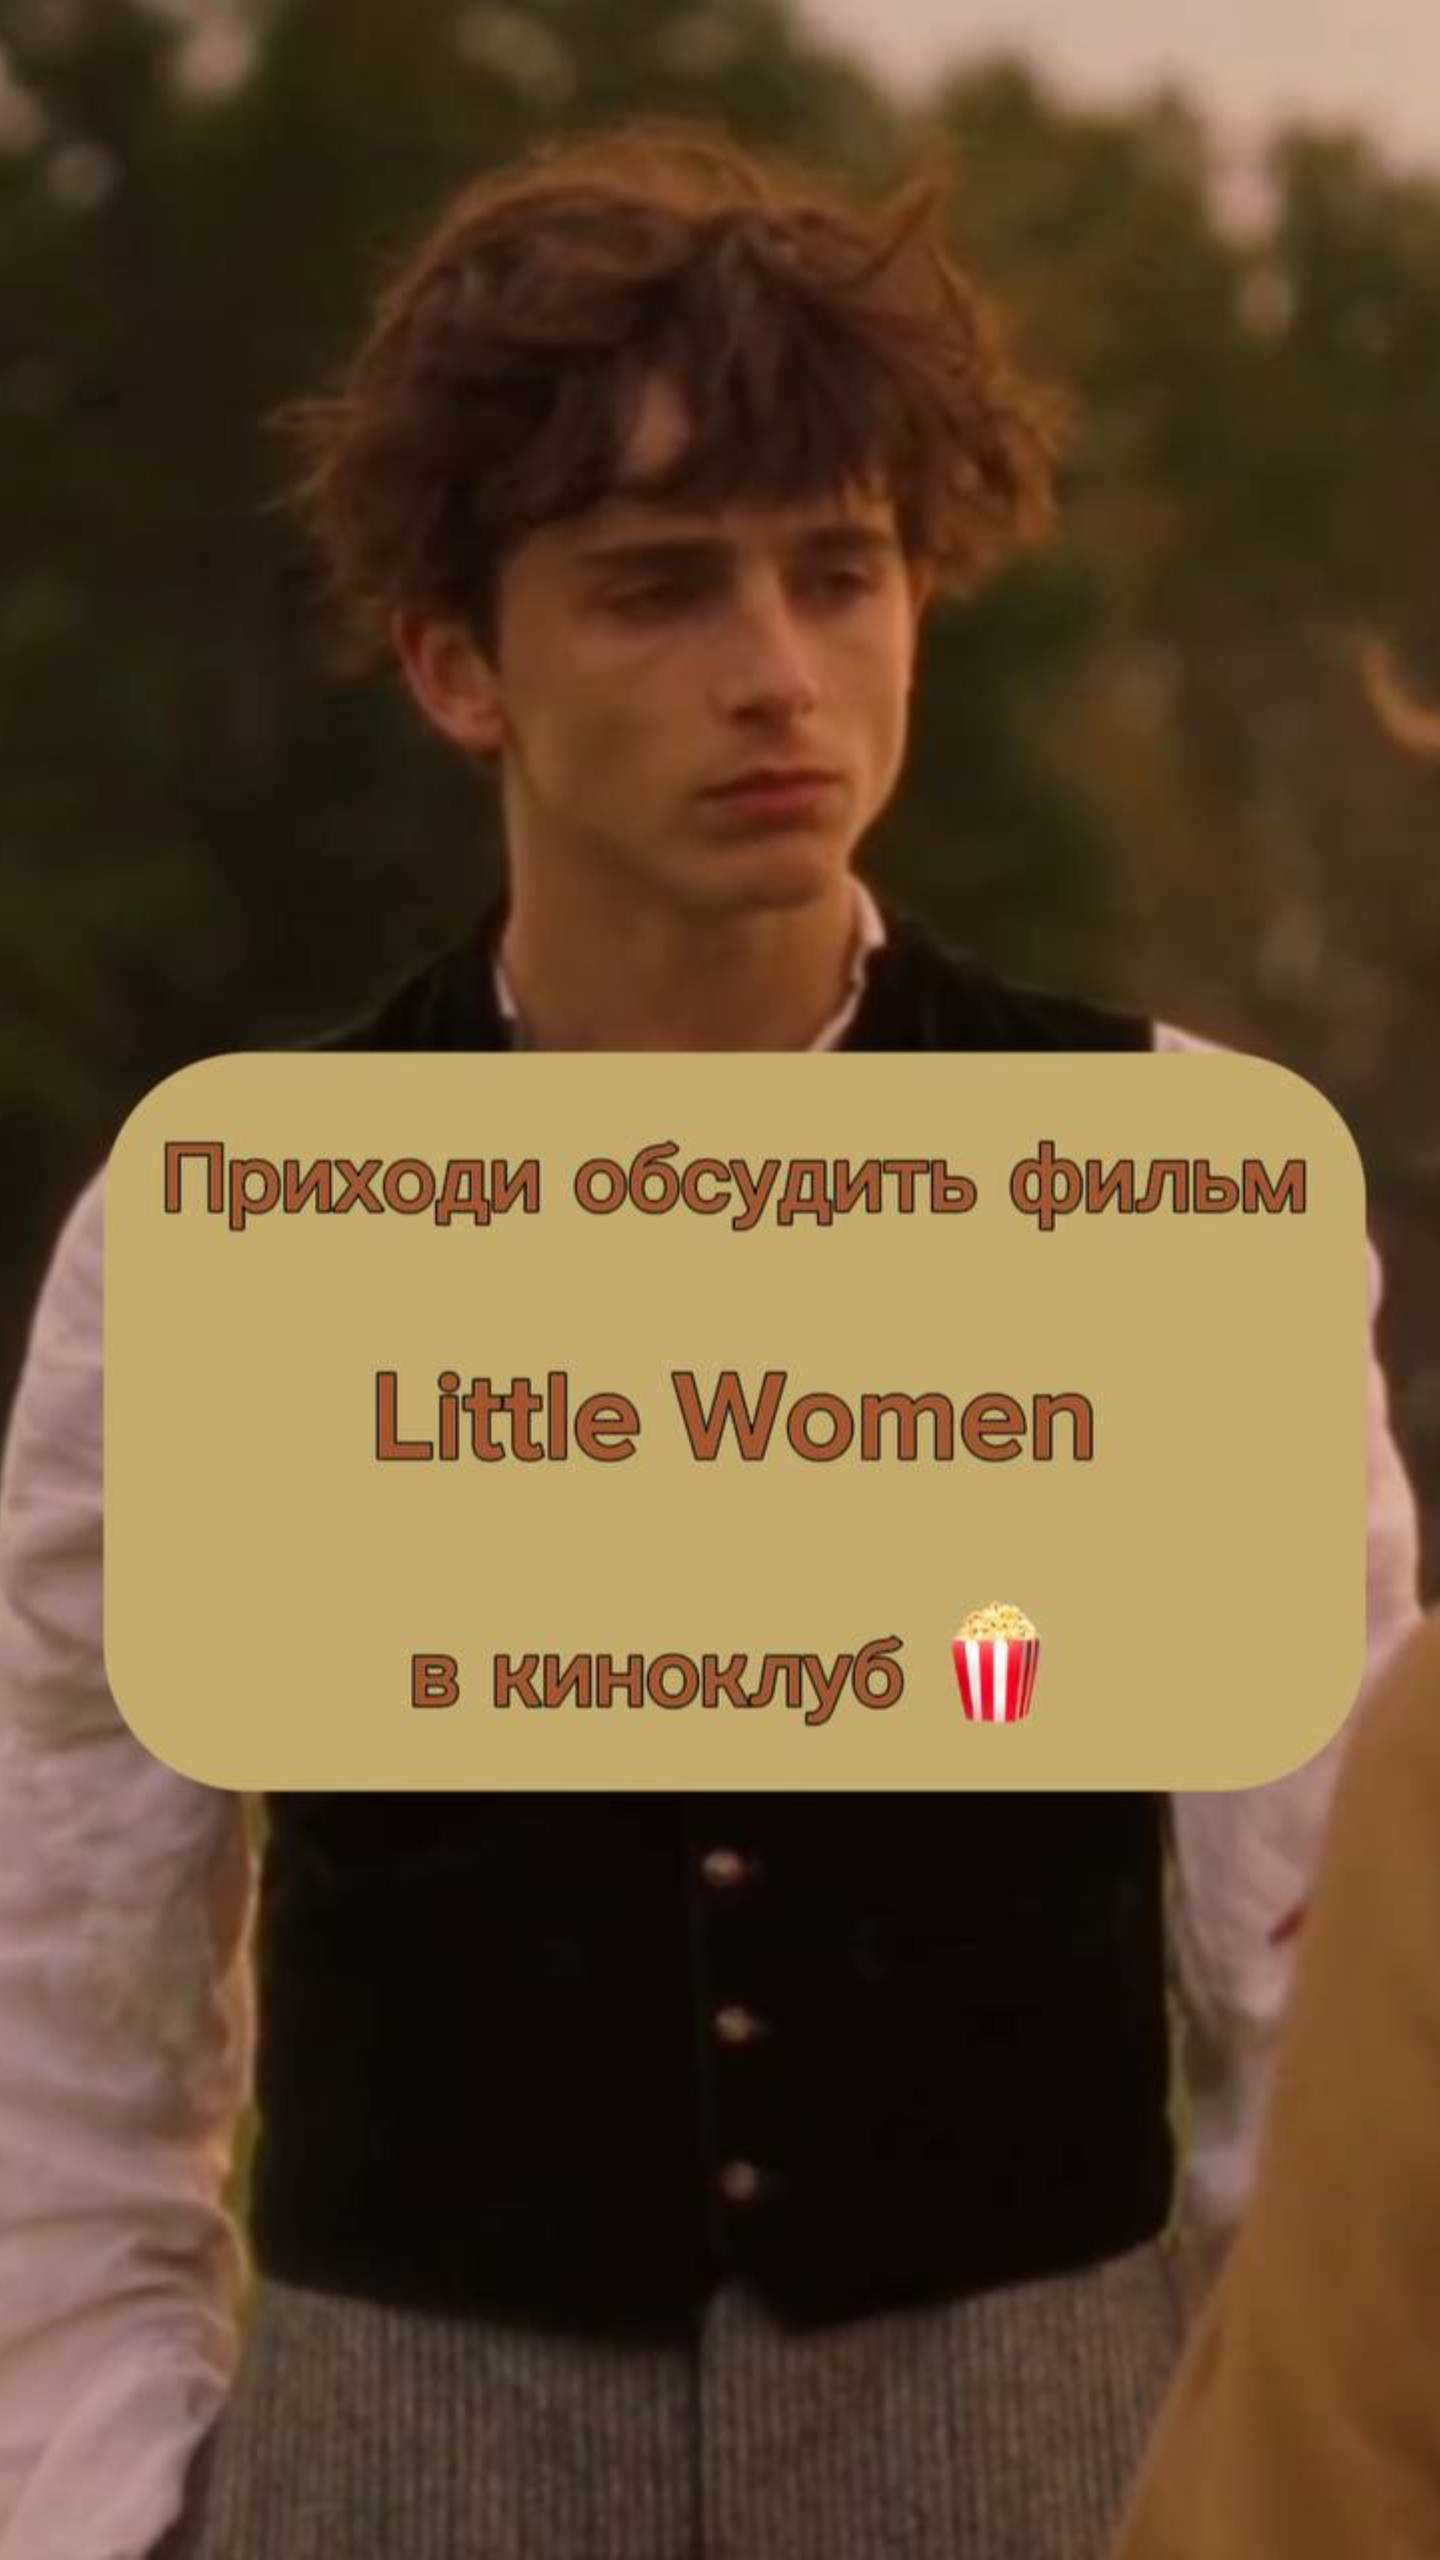 Обсуждаем фильм «Маленькие женщины» на английском языке в эту пятницу 28.06 в 19:00